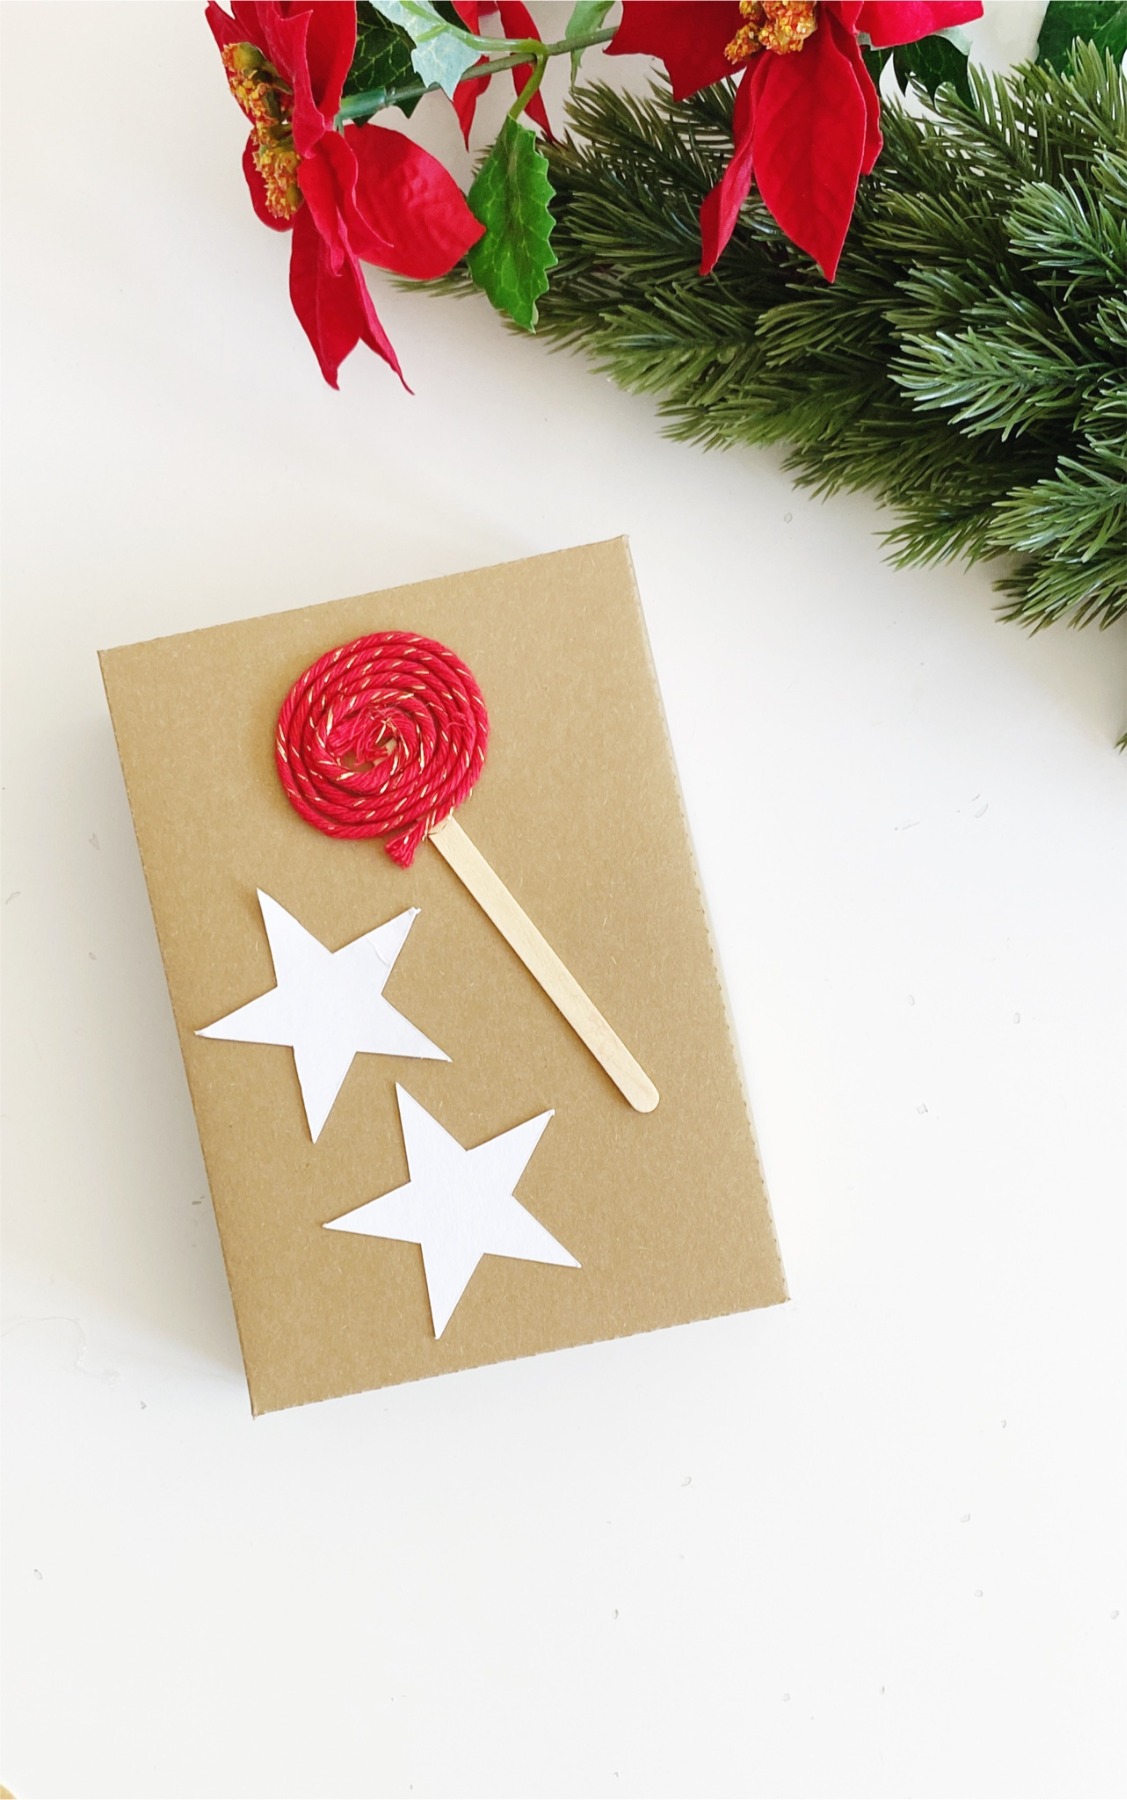 Bastelset für Weihnachten, DIY Kit Weihnachtskarten basteln, Weihnachtsgeschenke verpacken Ideen 19